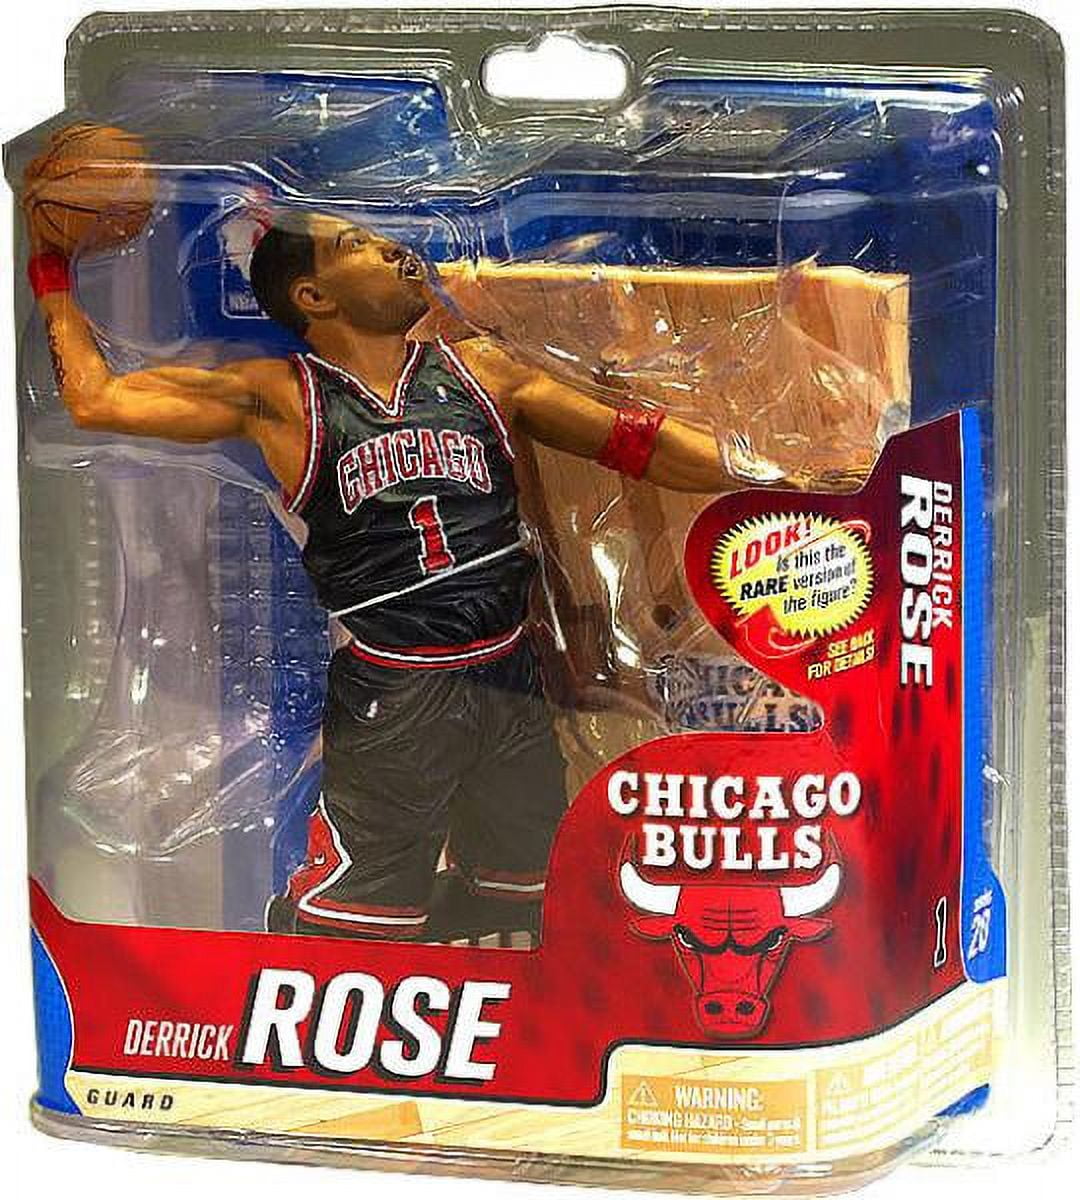 Derrick Rose Bulls Jersey - Derrick Rose Chicago Bulls Jersey - bulls jersey  1998 